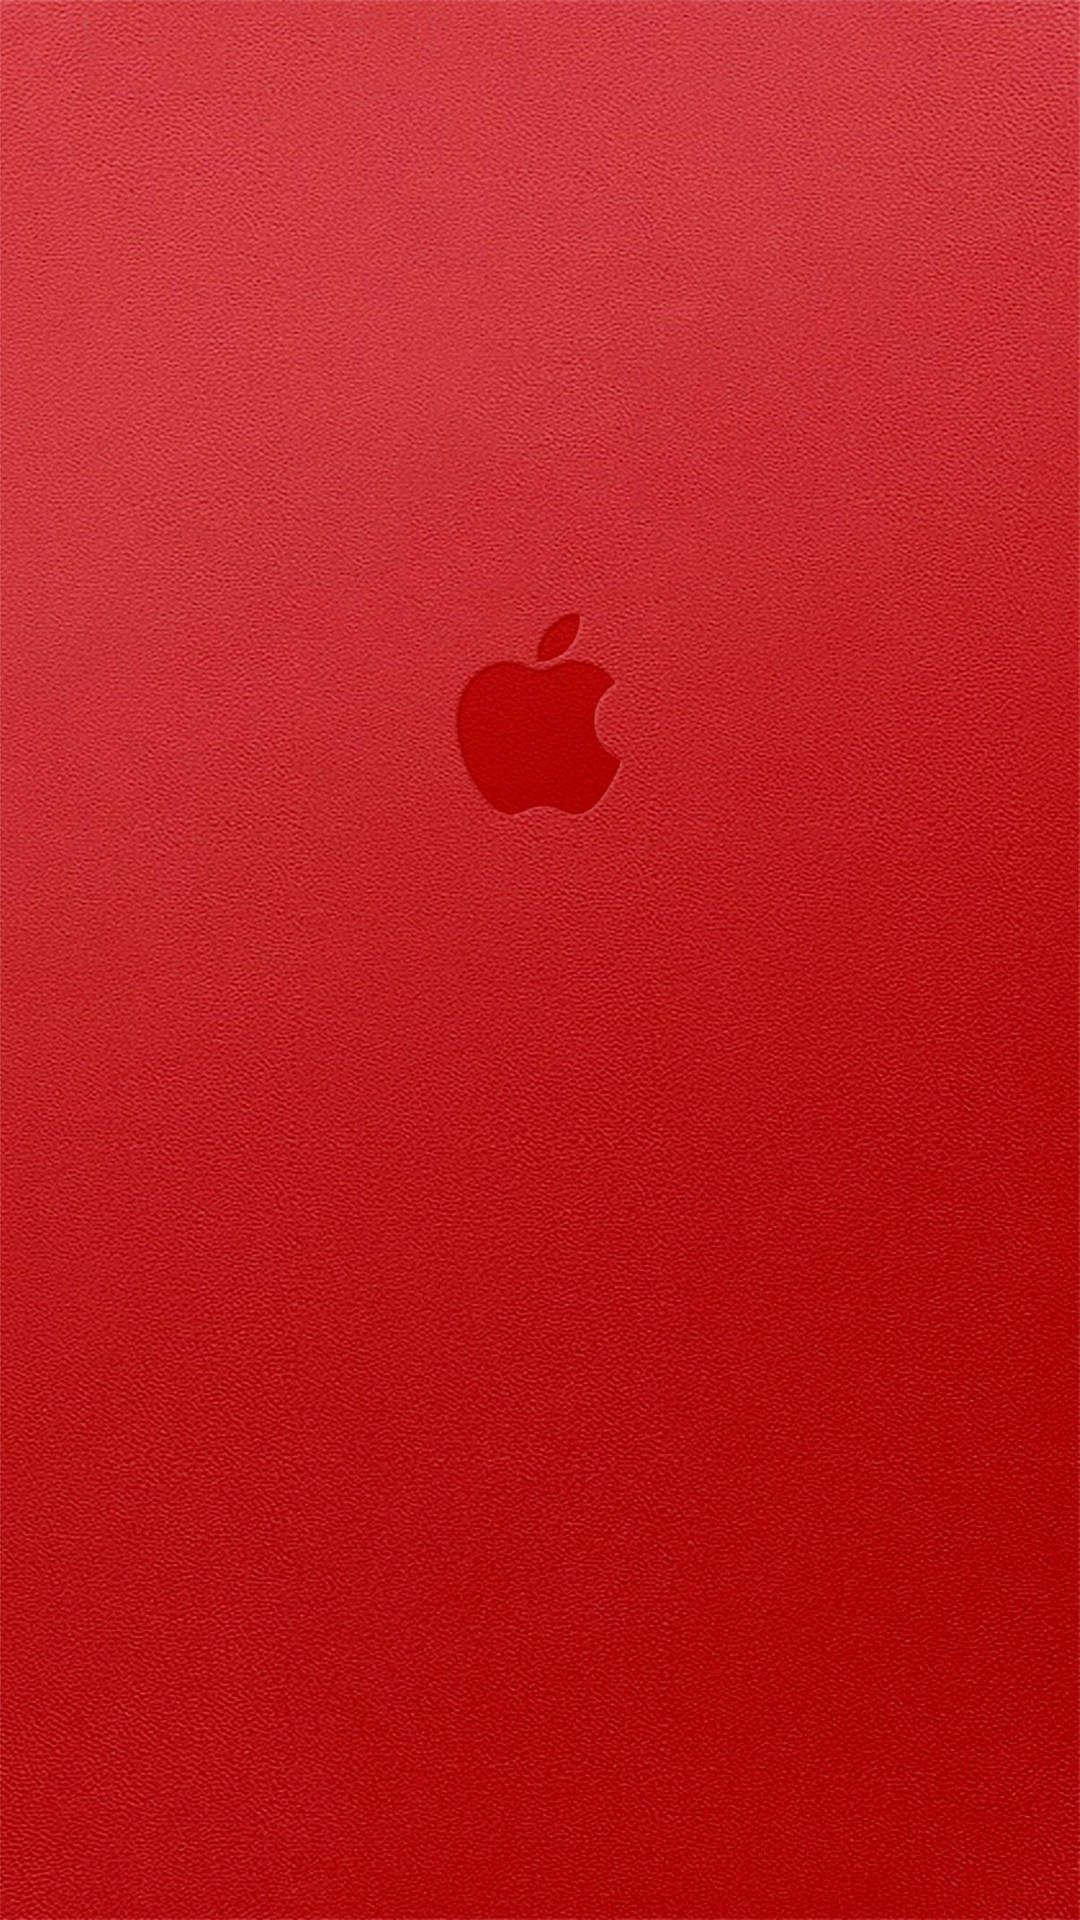 Iphonex Original Apple Logo Auf Rot Wallpaper